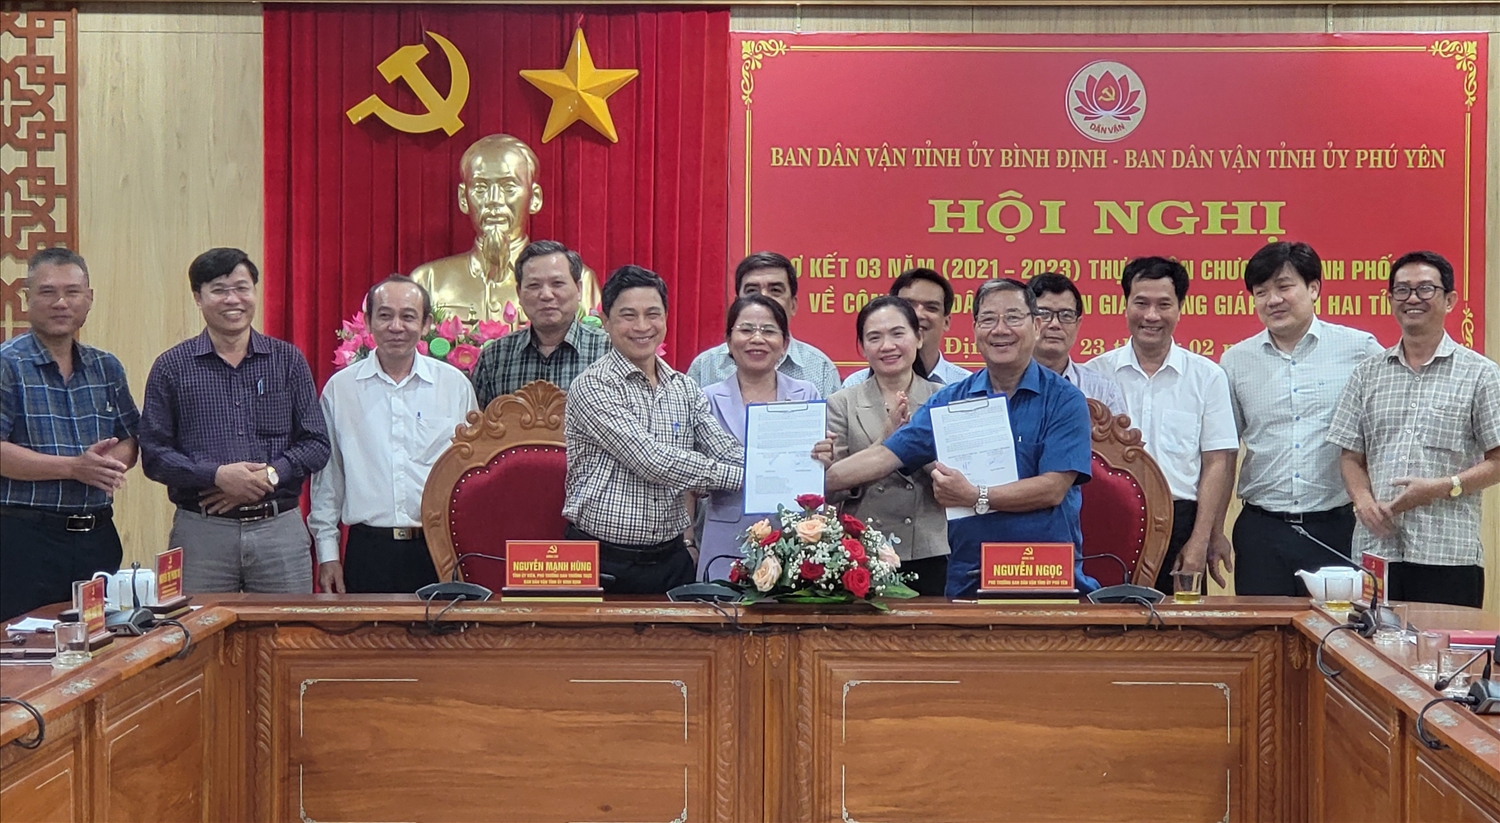 Ban Dân vận Tỉnh ủy Bình Định và Phú Yên đã ký kết chương trình phối hợp công tác năm 2024